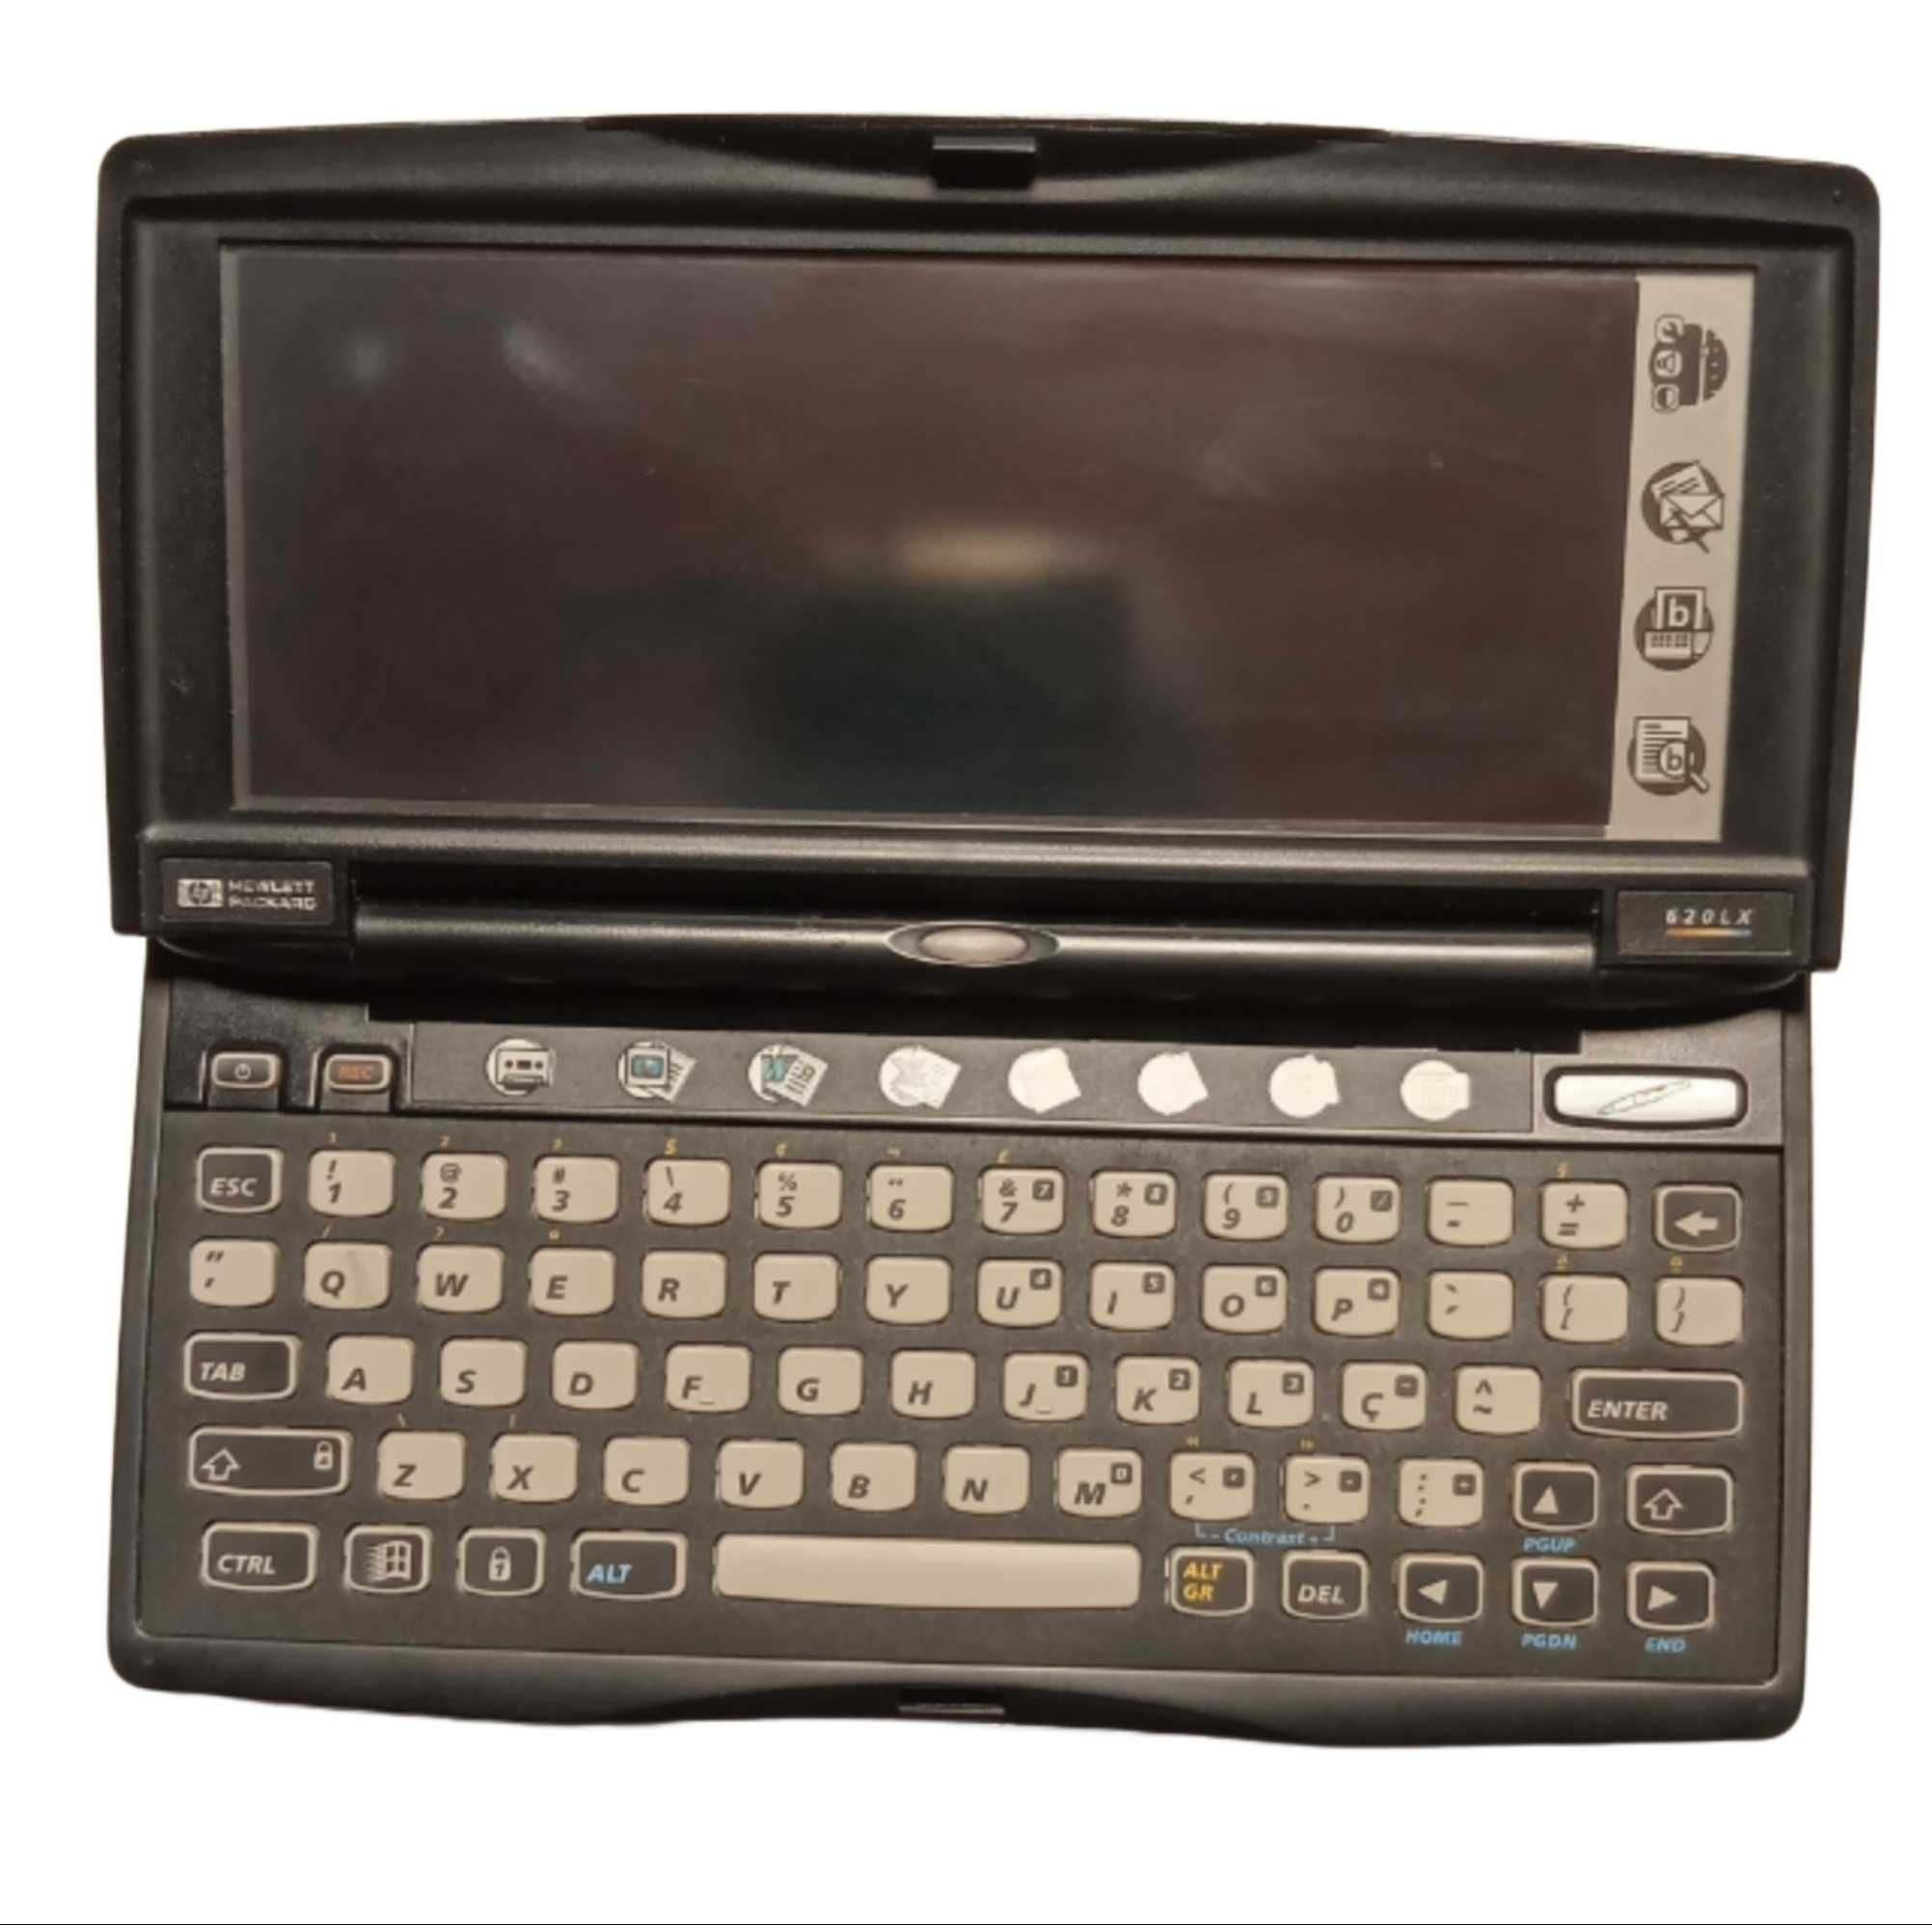 HP 620LX Palmtop PC